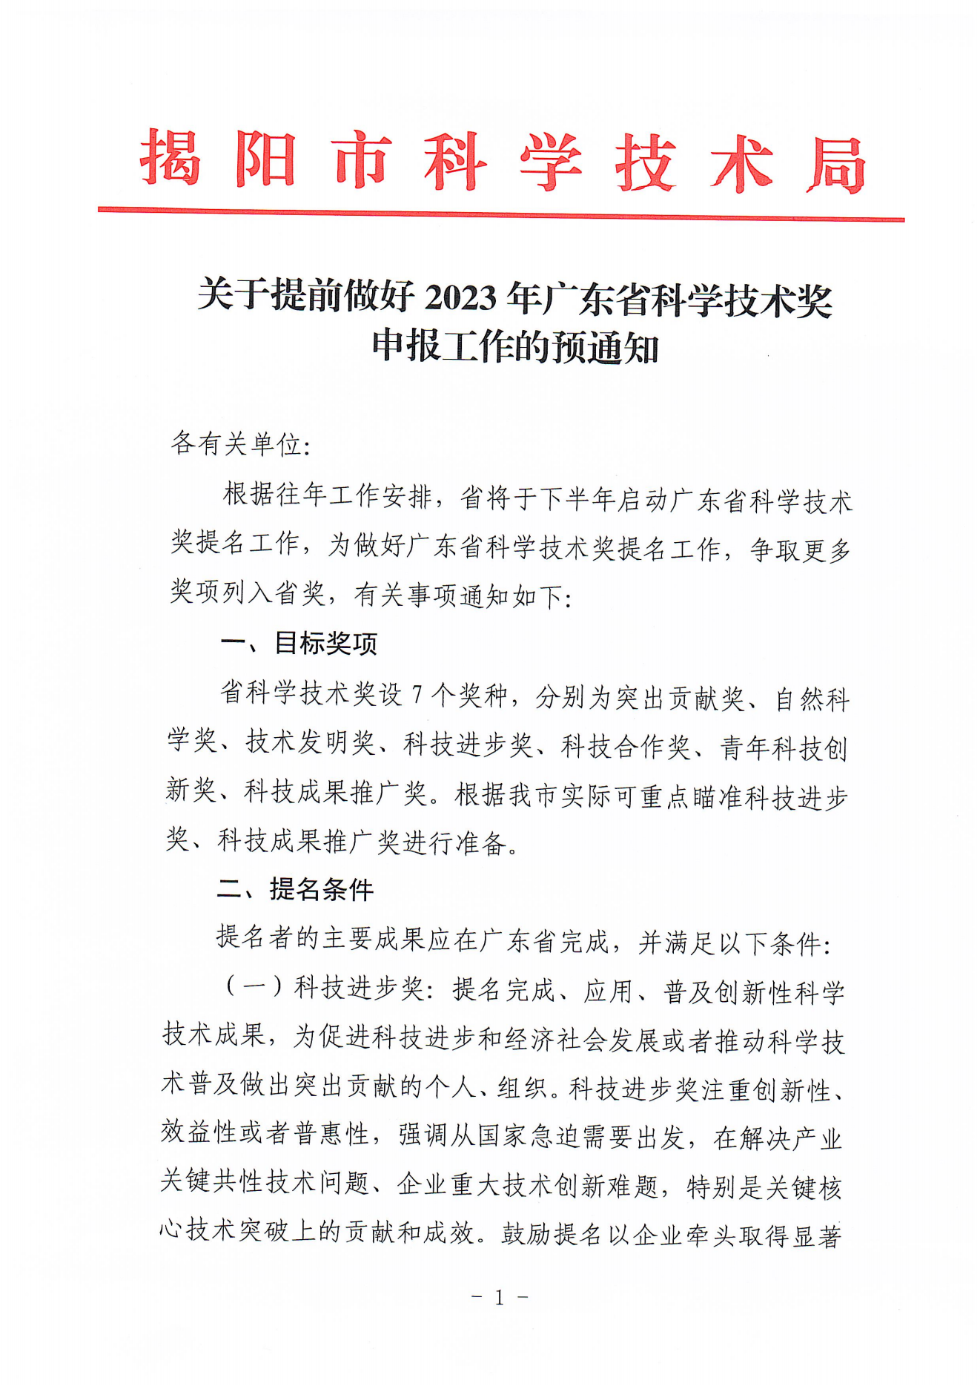 关于转发《关于提前做好2023年广东省科学技术奖申报工作的预通知》的通知_01.png